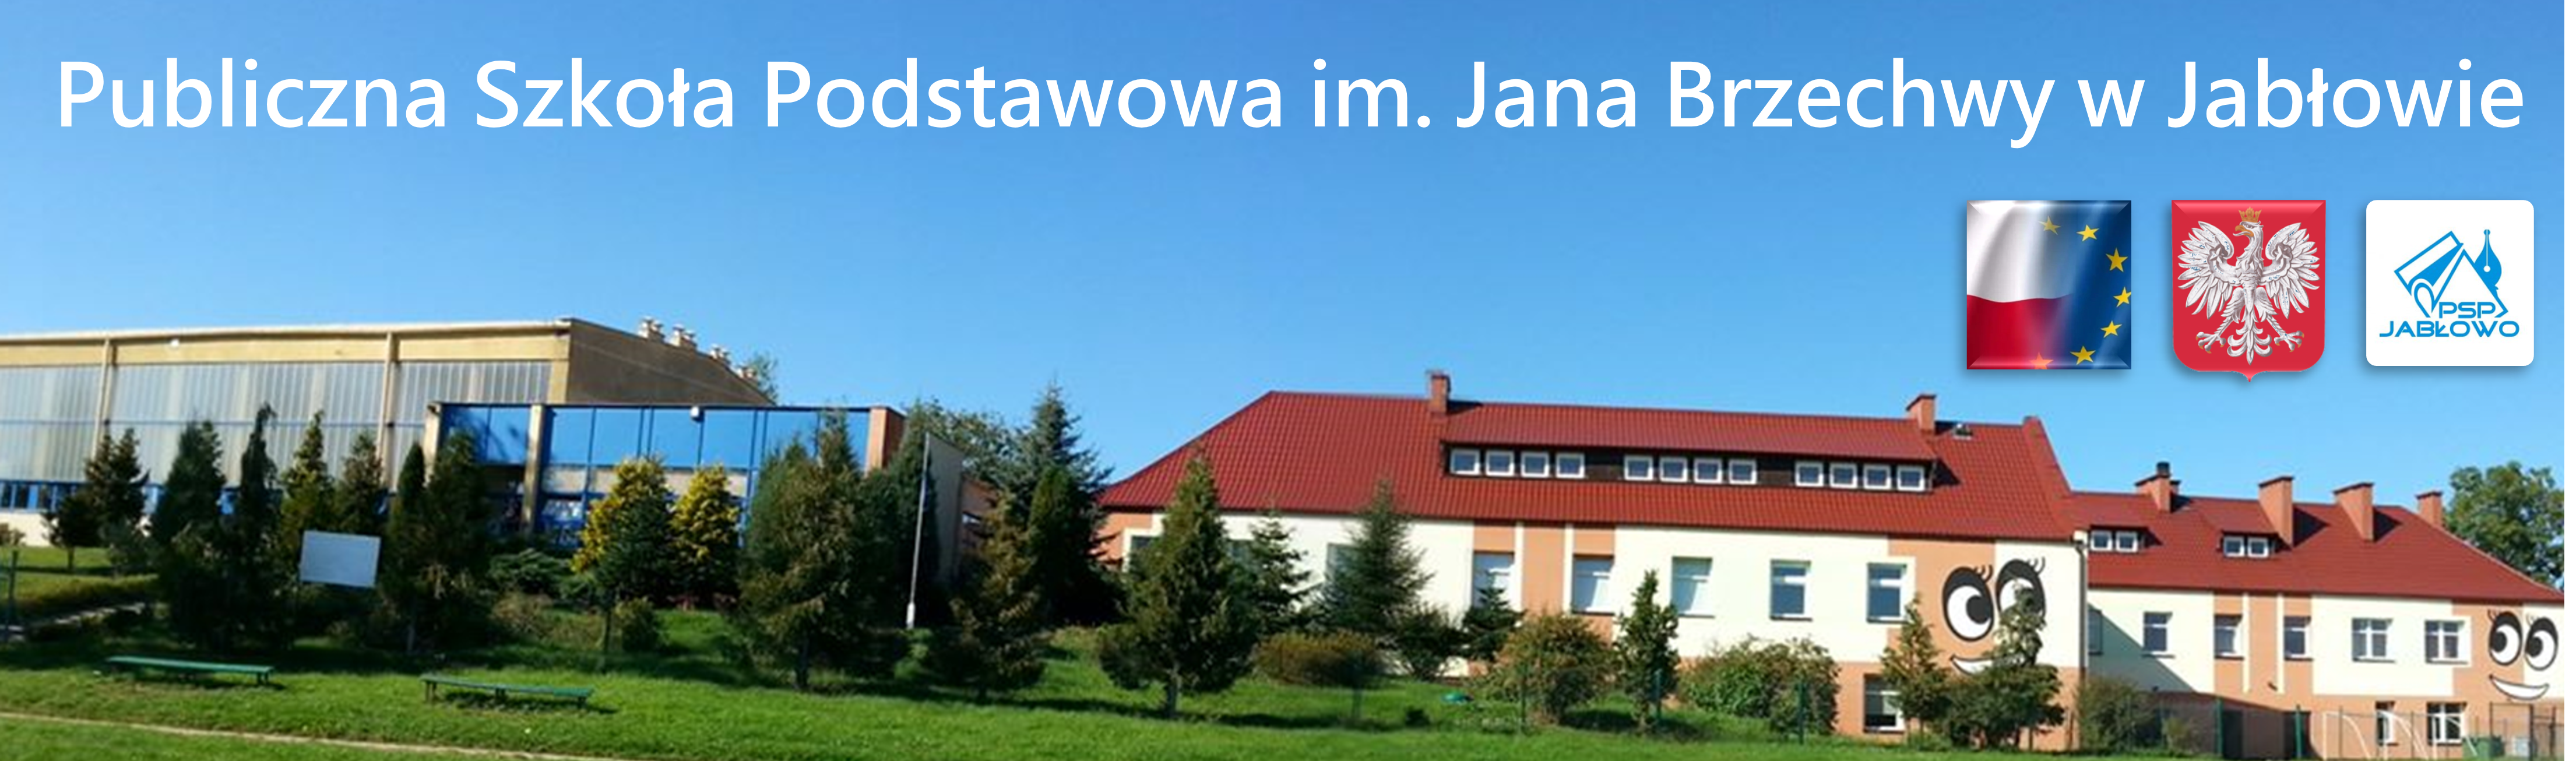 Publiczna Szkoła Podstawowa w Jabłowie im. Jana Brzechwy